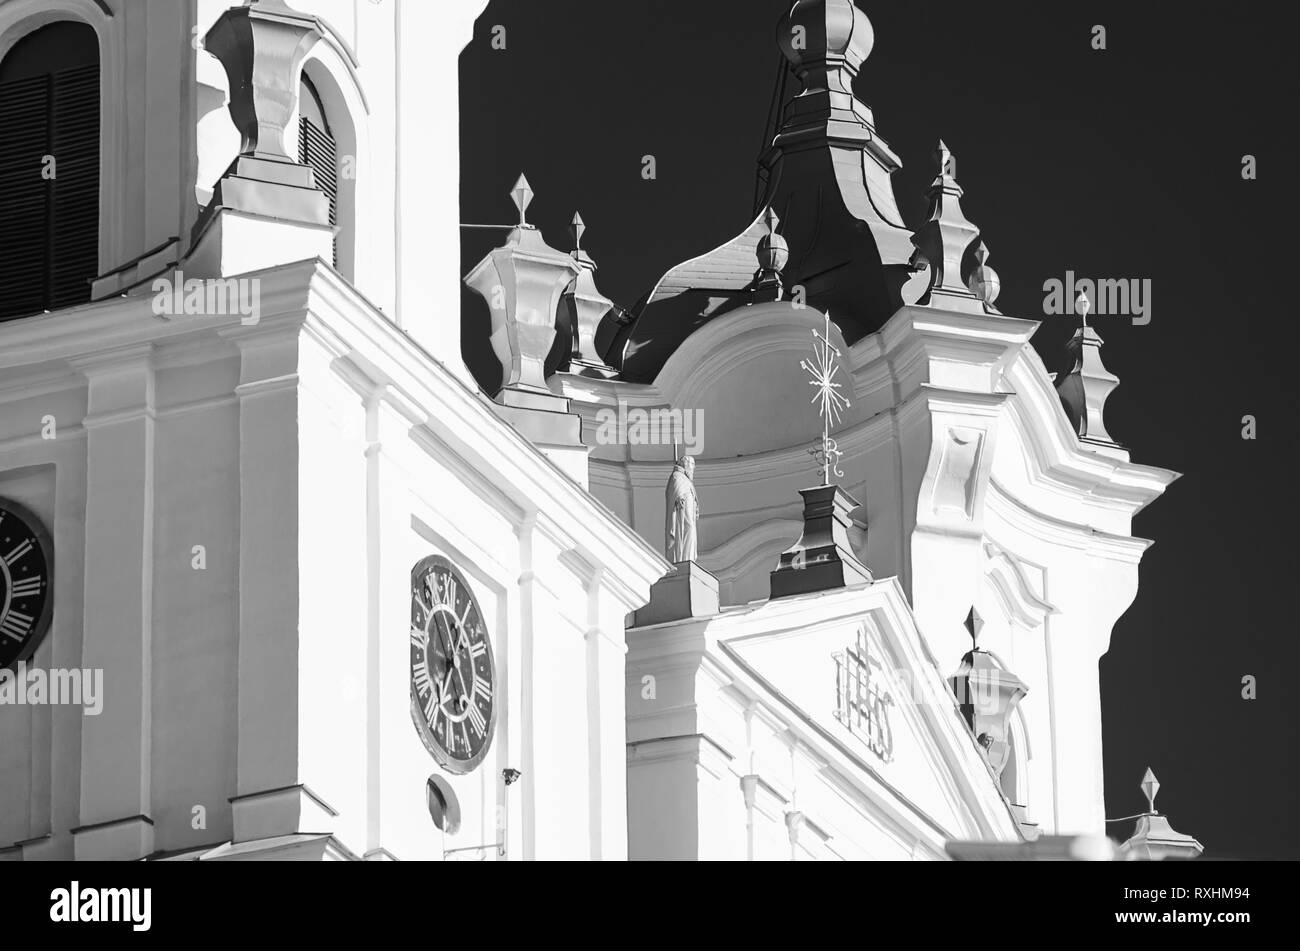 Minsk, Bélarus- 26 mai 2018 : Cathédrale de Saint François Xavier. Église Farny. Des éléments architecturaux du bâtiment. Beau temps clair. Black et W Banque D'Images